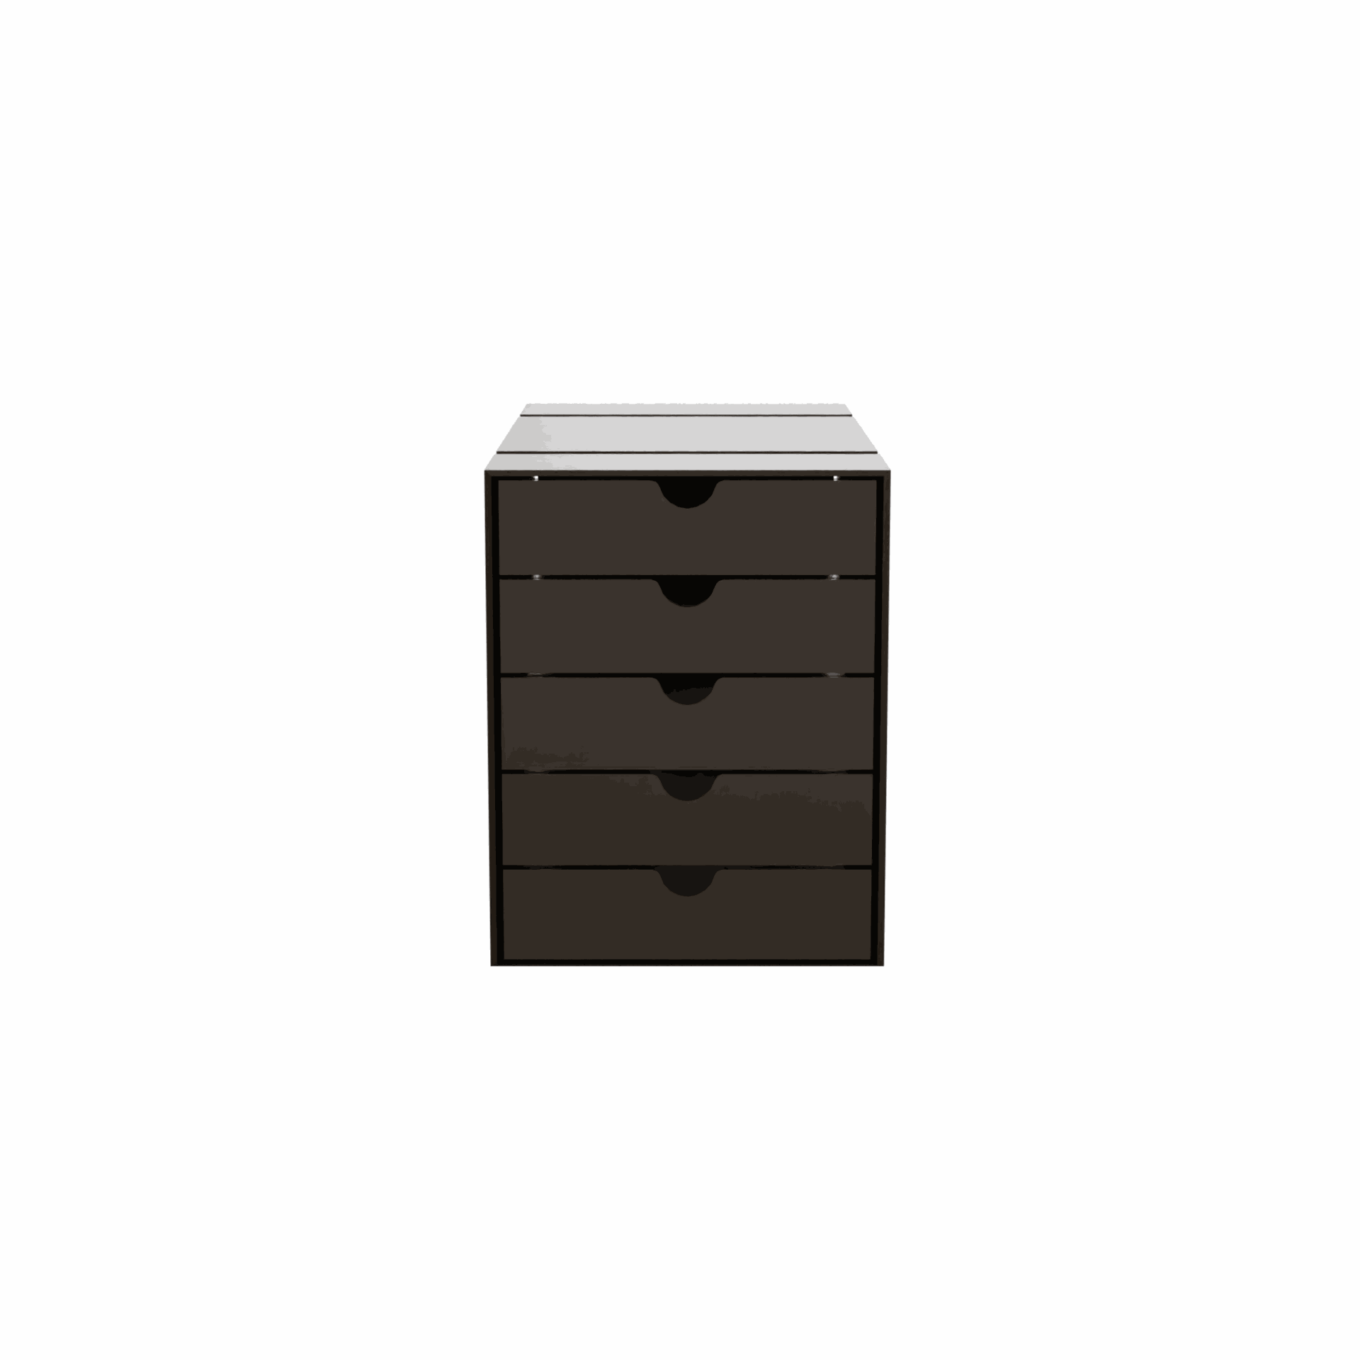 USM boîte Inos – 5 tiroirs - Image #2